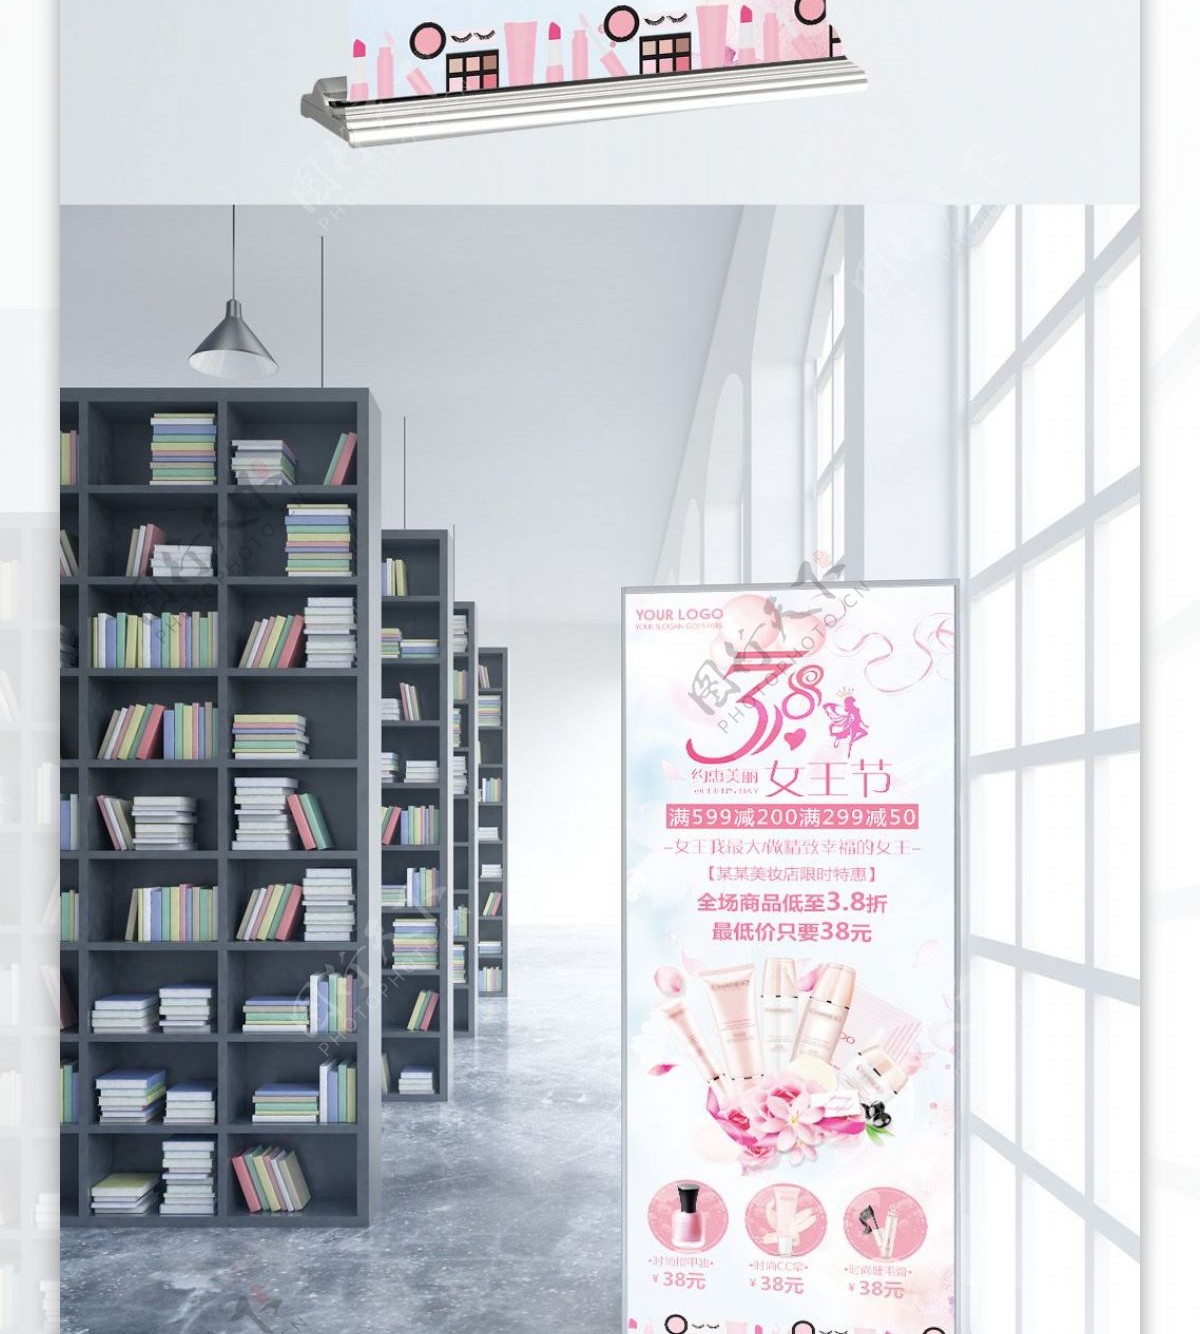 粉色时尚38女王节促销展架模板